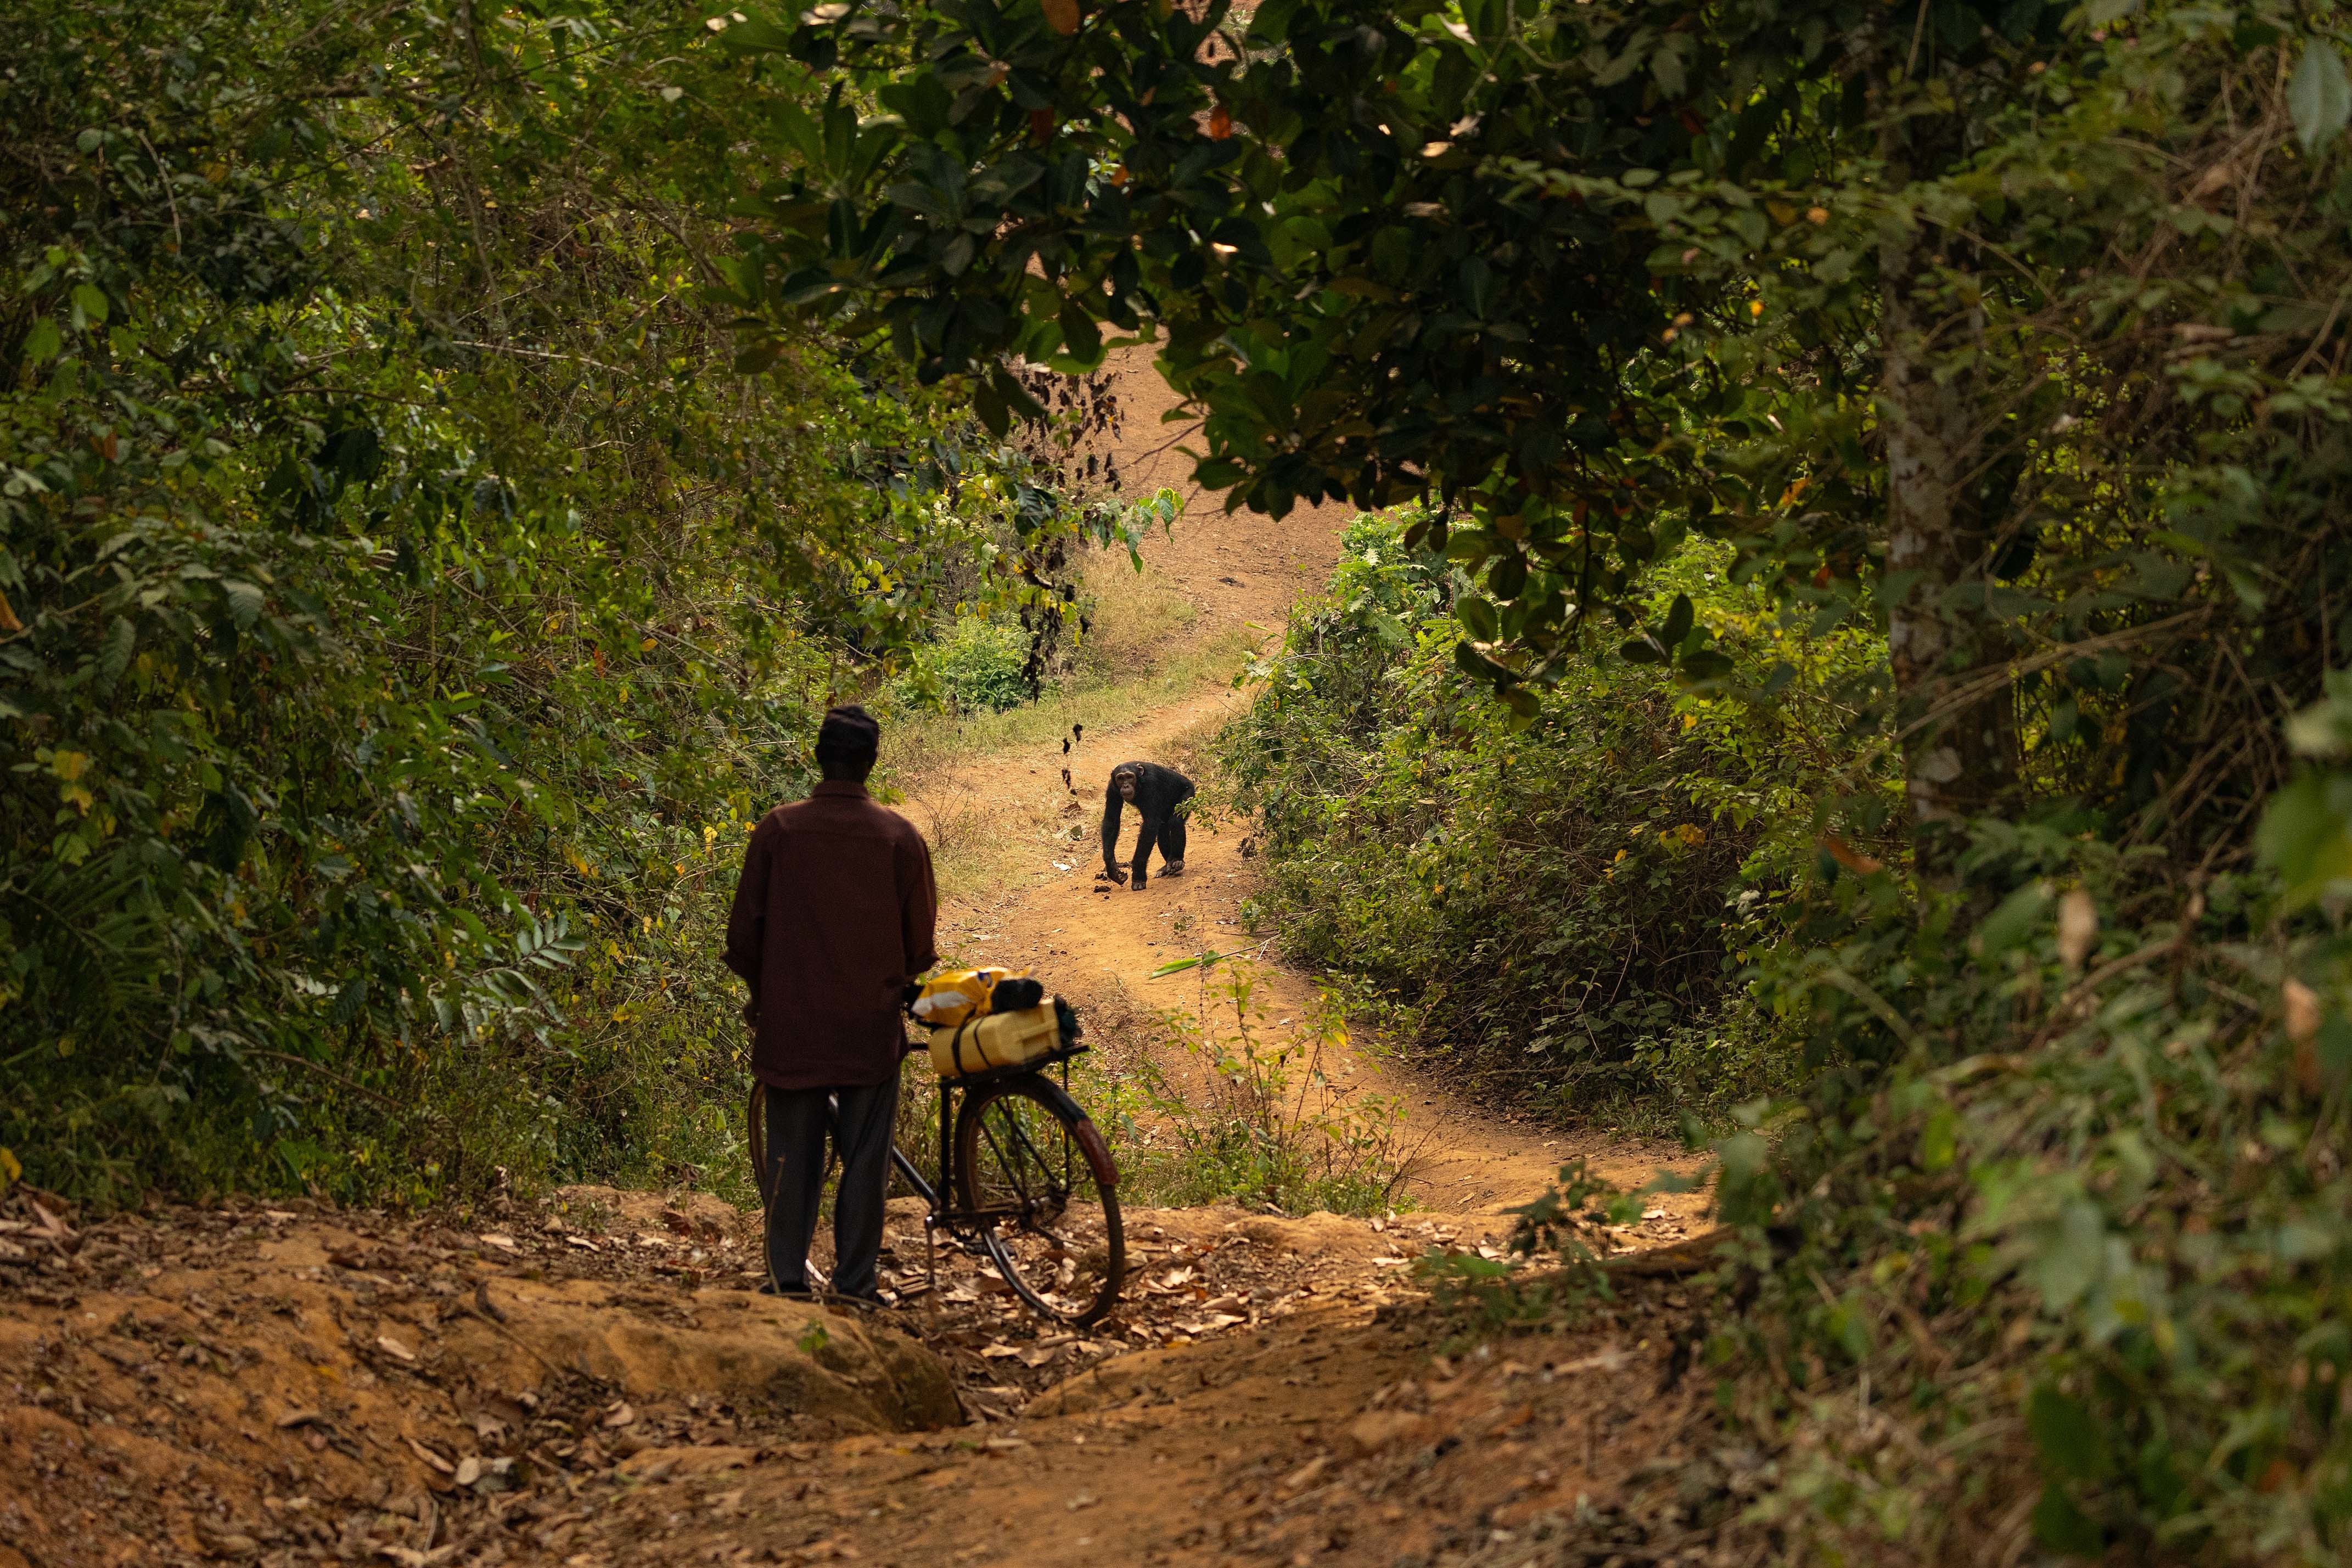 Los chimpancés y los humanos se están acercando en Uganda debido a la pérdida de hábitat (BBC Studios/,Abigail Lees/PA)